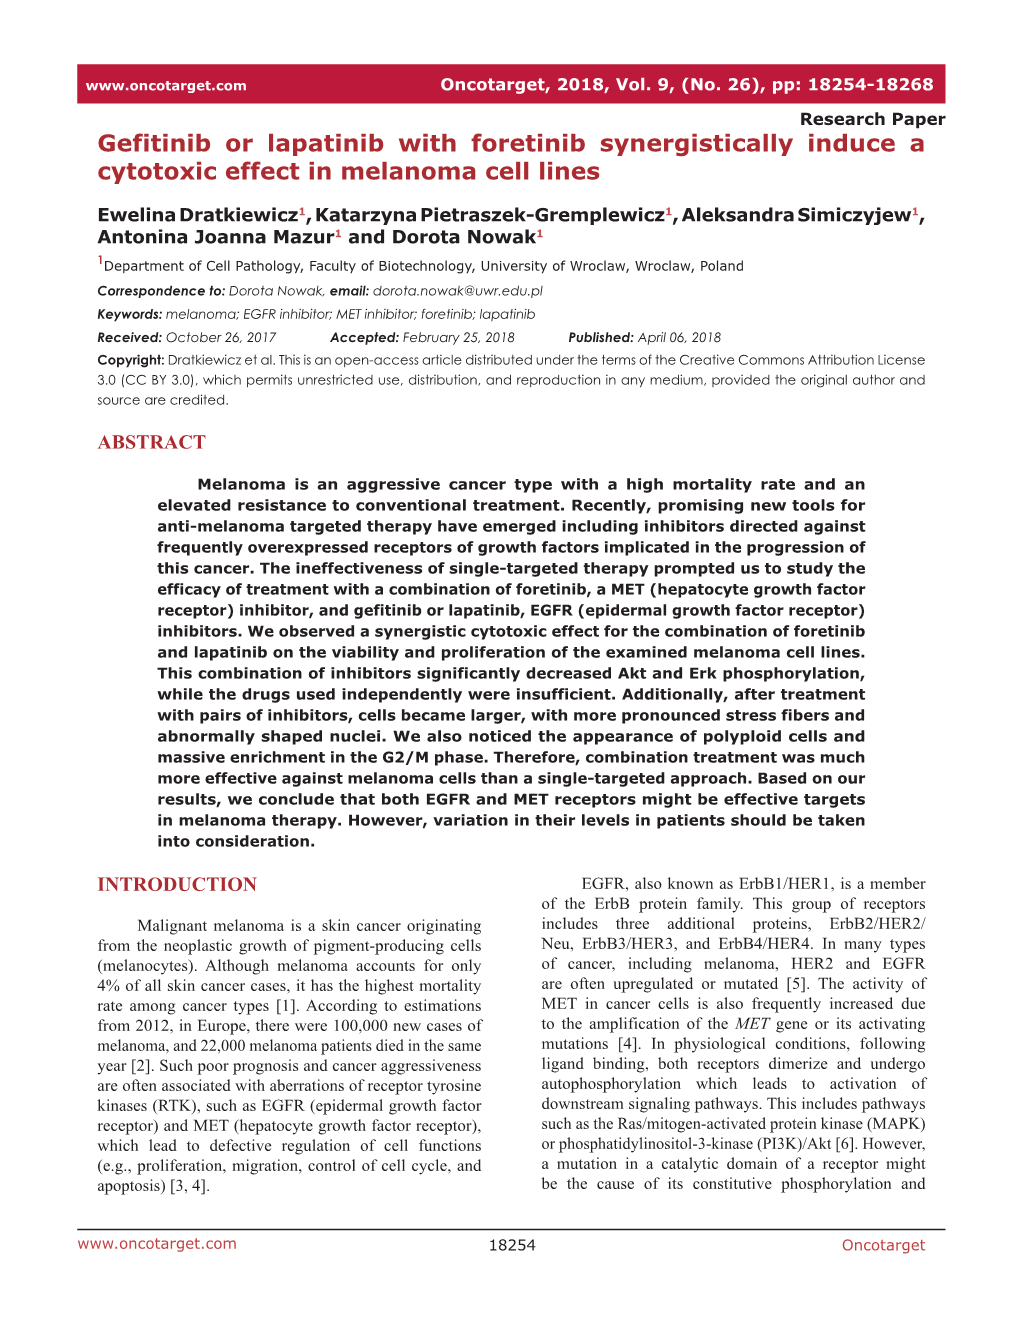 Gefitinib Or Lapatinib with Foretinib Synergistically Induce a Cytotoxic Effect in Melanoma Cell Lines